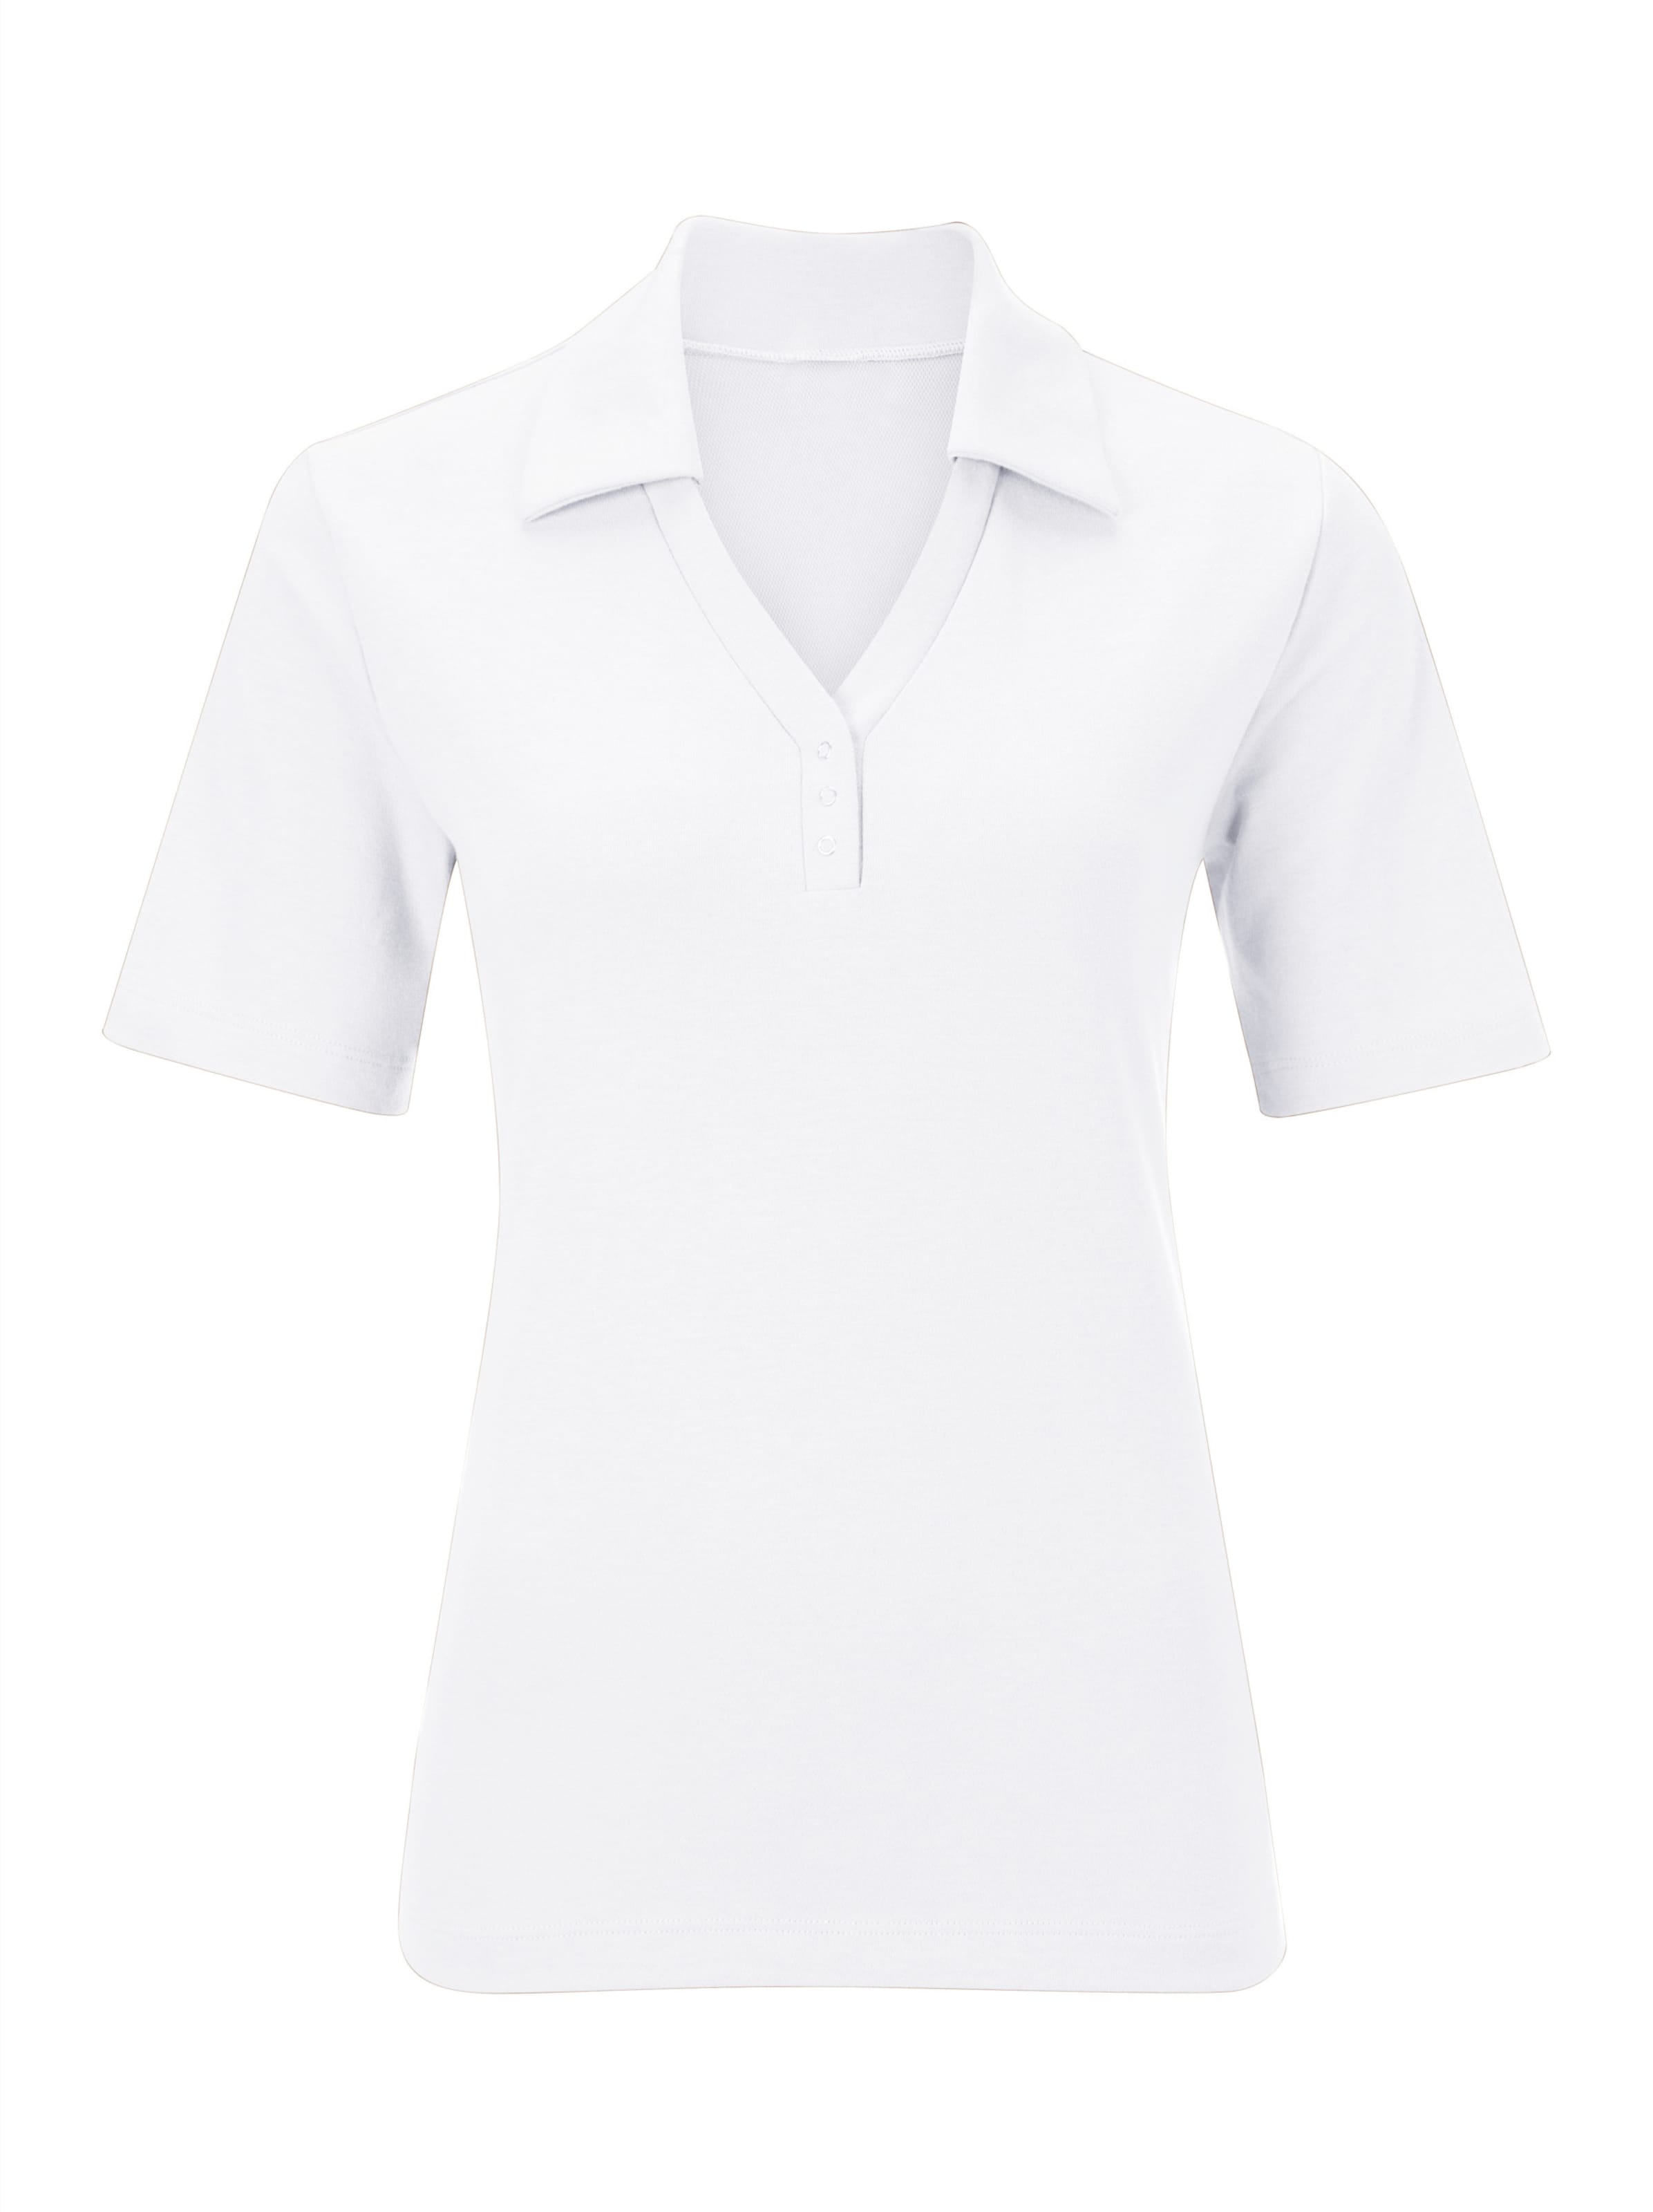 sung günstig Kaufen-Poloshirt in weiß von heine. Poloshirt in weiß von heine <![CDATA[Shirt mit offener Kragenlösung. Kleine Knopfleiste mit Druckknöpfen. Seitenschlitze. Spezielle Stay Cool & Dry-Ausrüstung.]]>. 